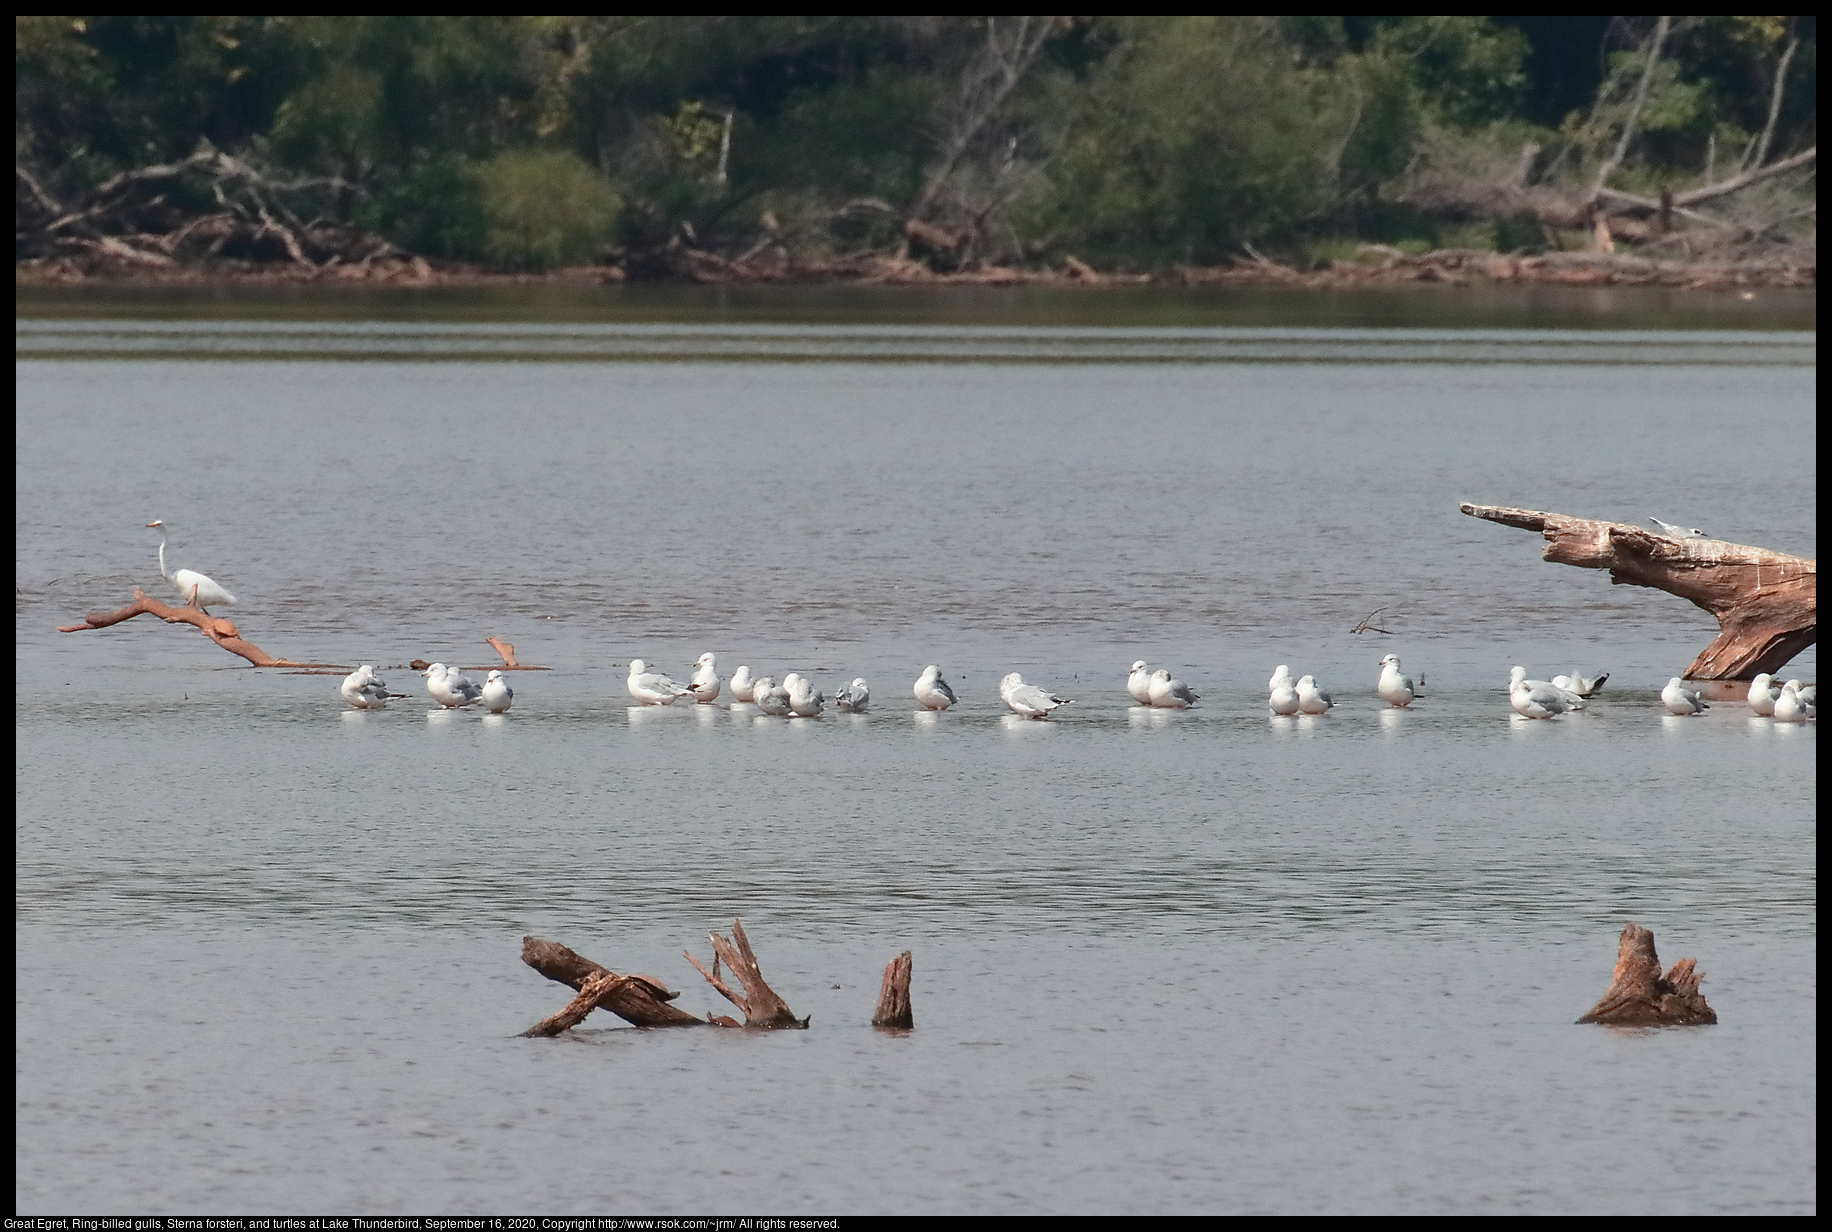 Great Egret, Ring-billed gulls, Sterna forsteri, and turtles at Lake Thunderbird, September 16, 2020